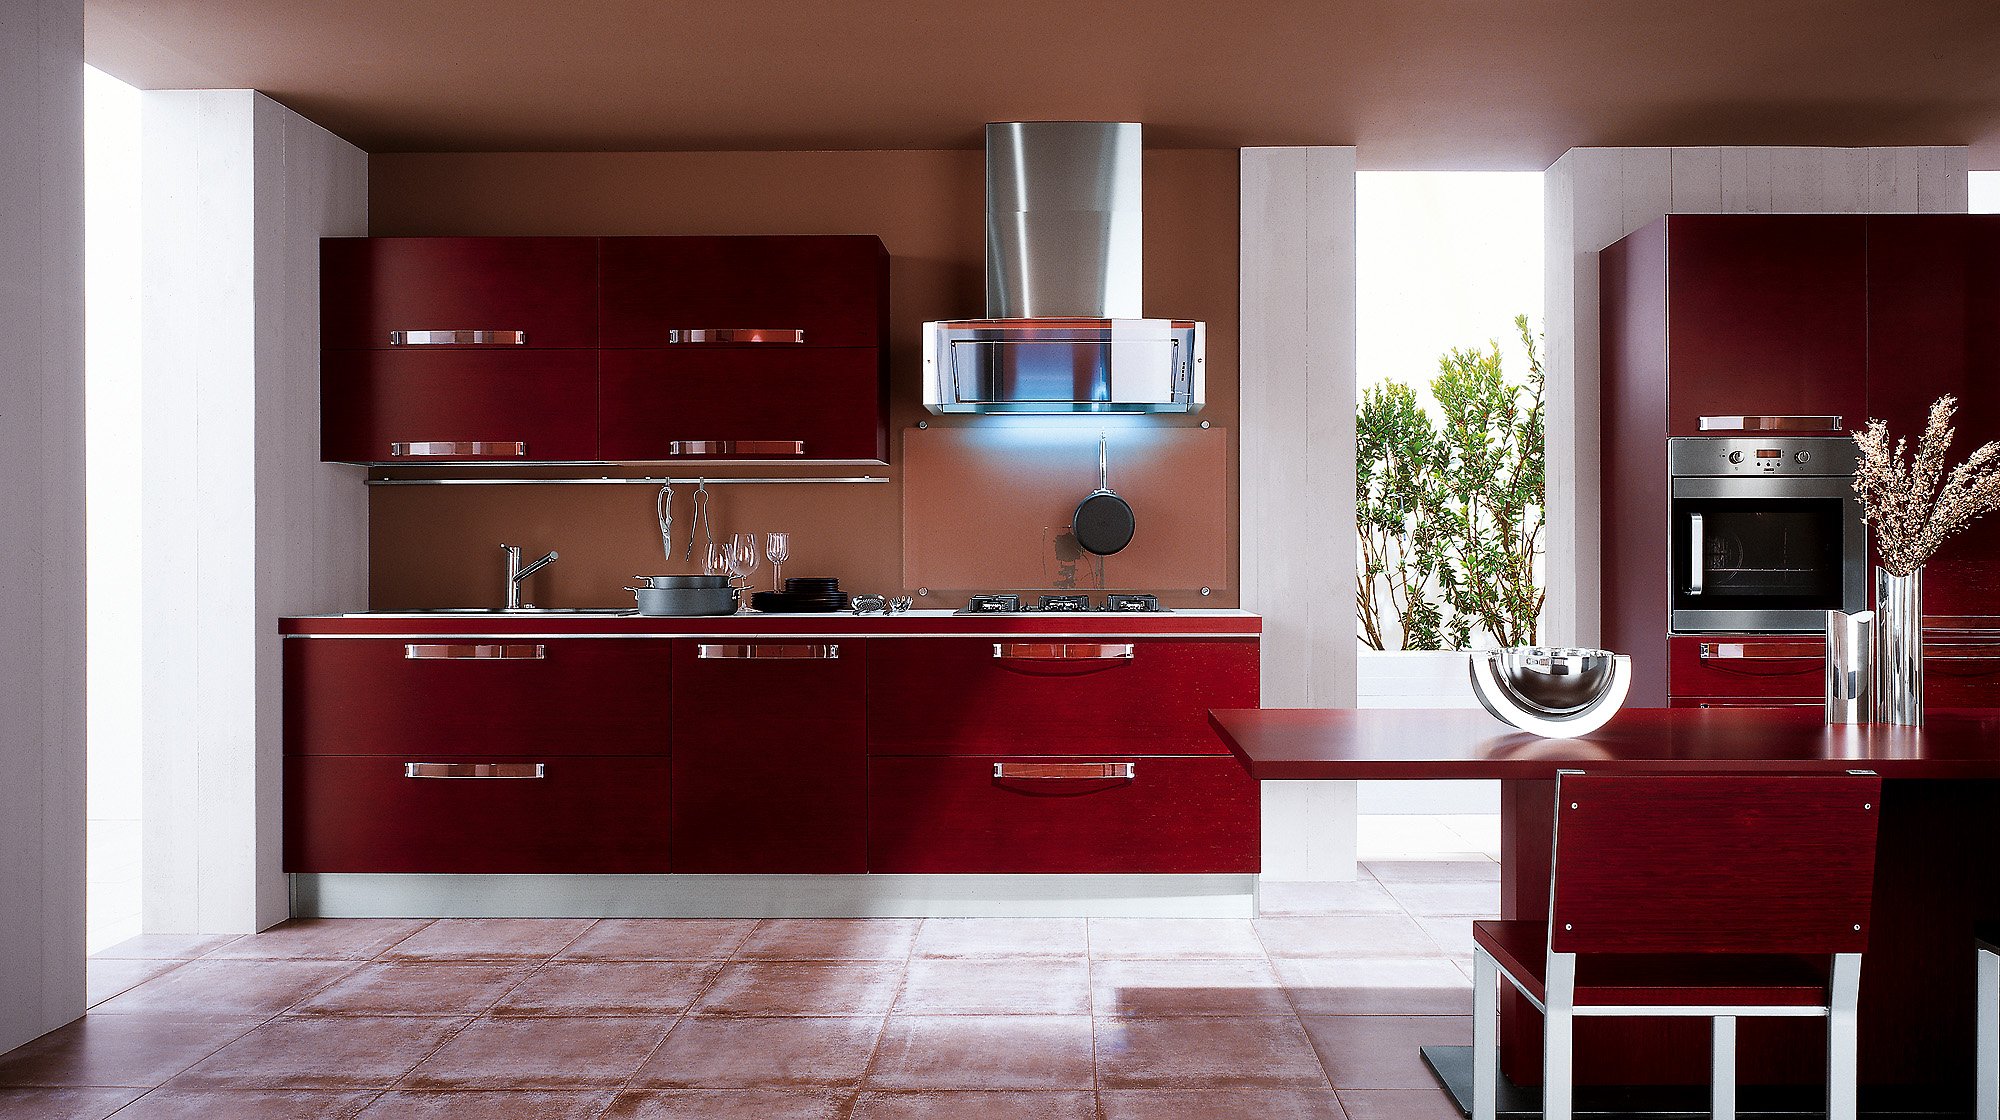 Бордовая кухня в интерьере: фото готовых дизайн-проектов интерьера, кухонные гарнитуры цвета бордо, обои